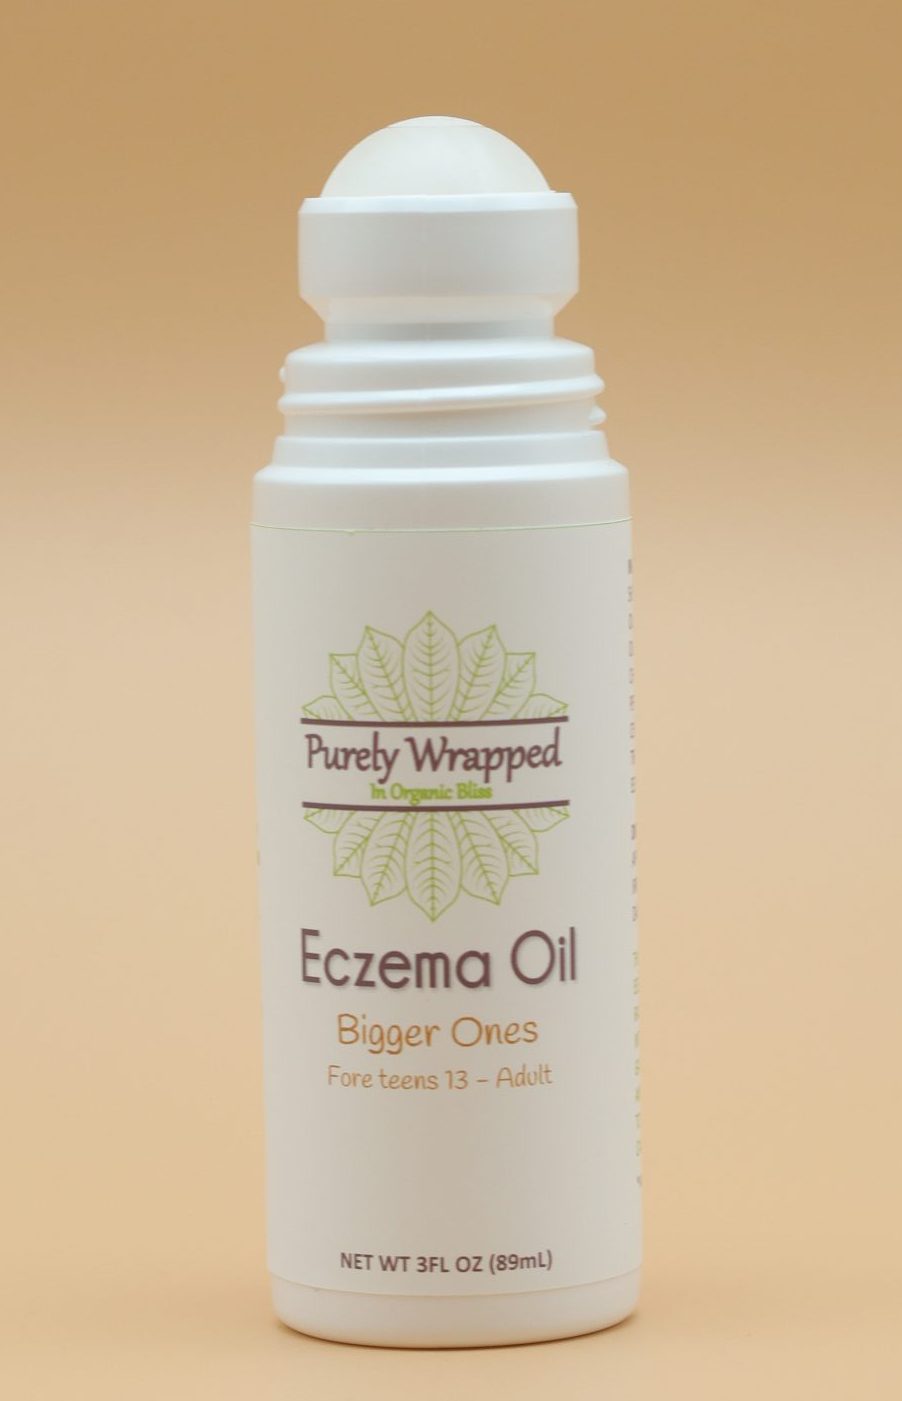 Eczema Oil Bigger Ones - Open Bottle